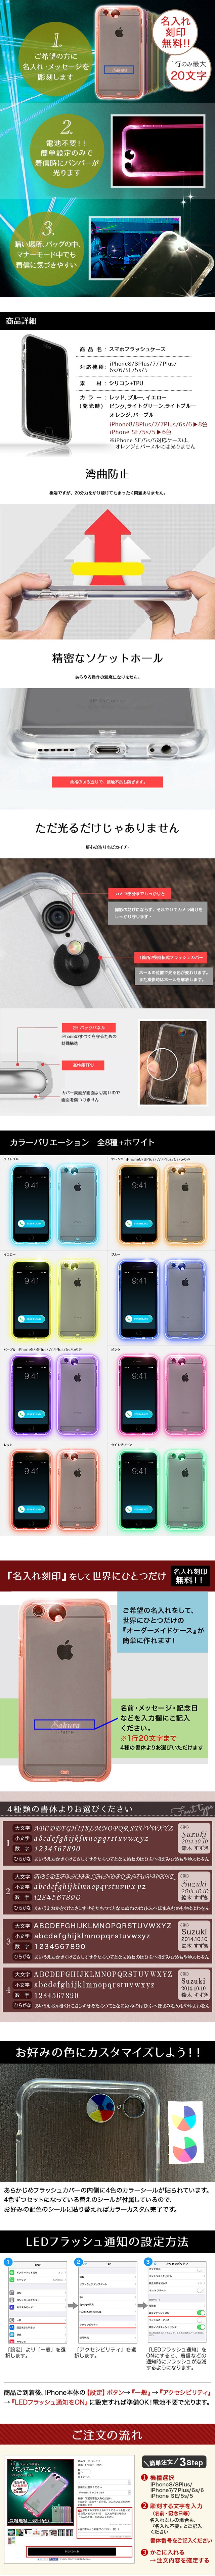 1台で8色に光るケース ネオンケース Iphone8 8plus 7 7plus 6s 6 Se 5s 5 Iphoneケース 名入れ刻印無料 ギフトに最適 おそろいで 名入れをして世界にひとつだけ Name 世界にひとつ 名入れアイテム 名入れ工房 Starland